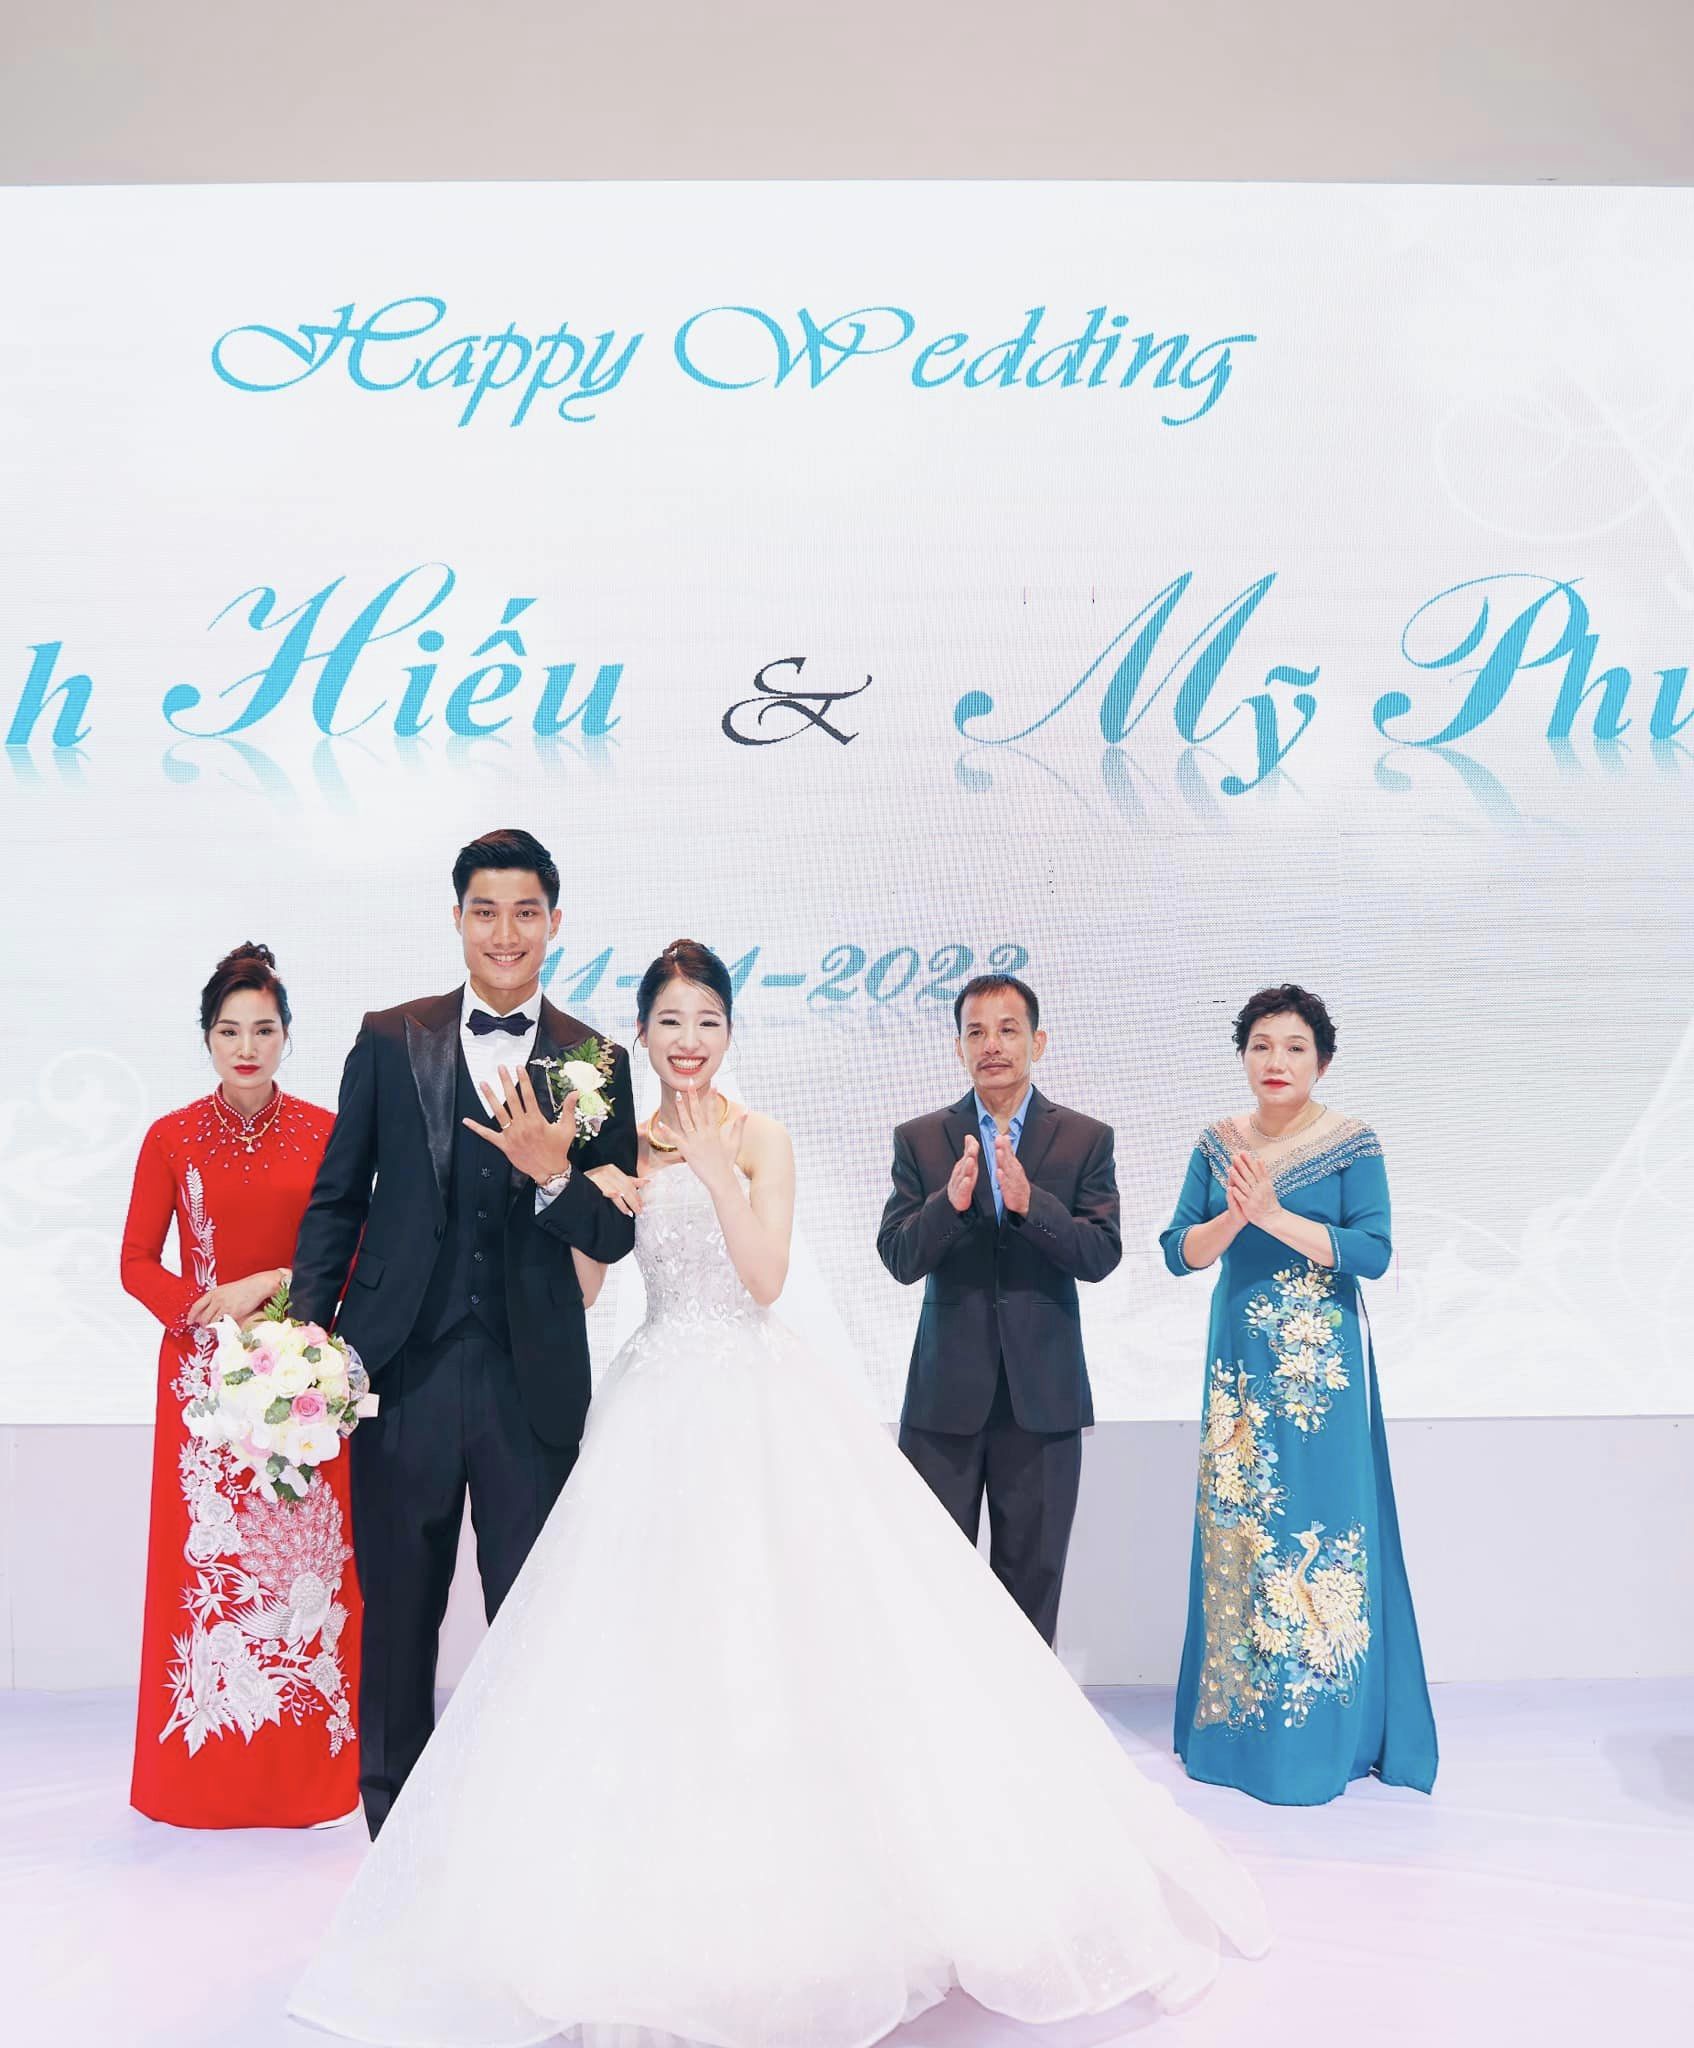 Cựu thủ môn U20 Việt Nam lấy vợ giáo viên, đám cưới không linh đình như Đoàn Văn Hậu nhưng trọn vẹn hạnh phúc- Ảnh 5.